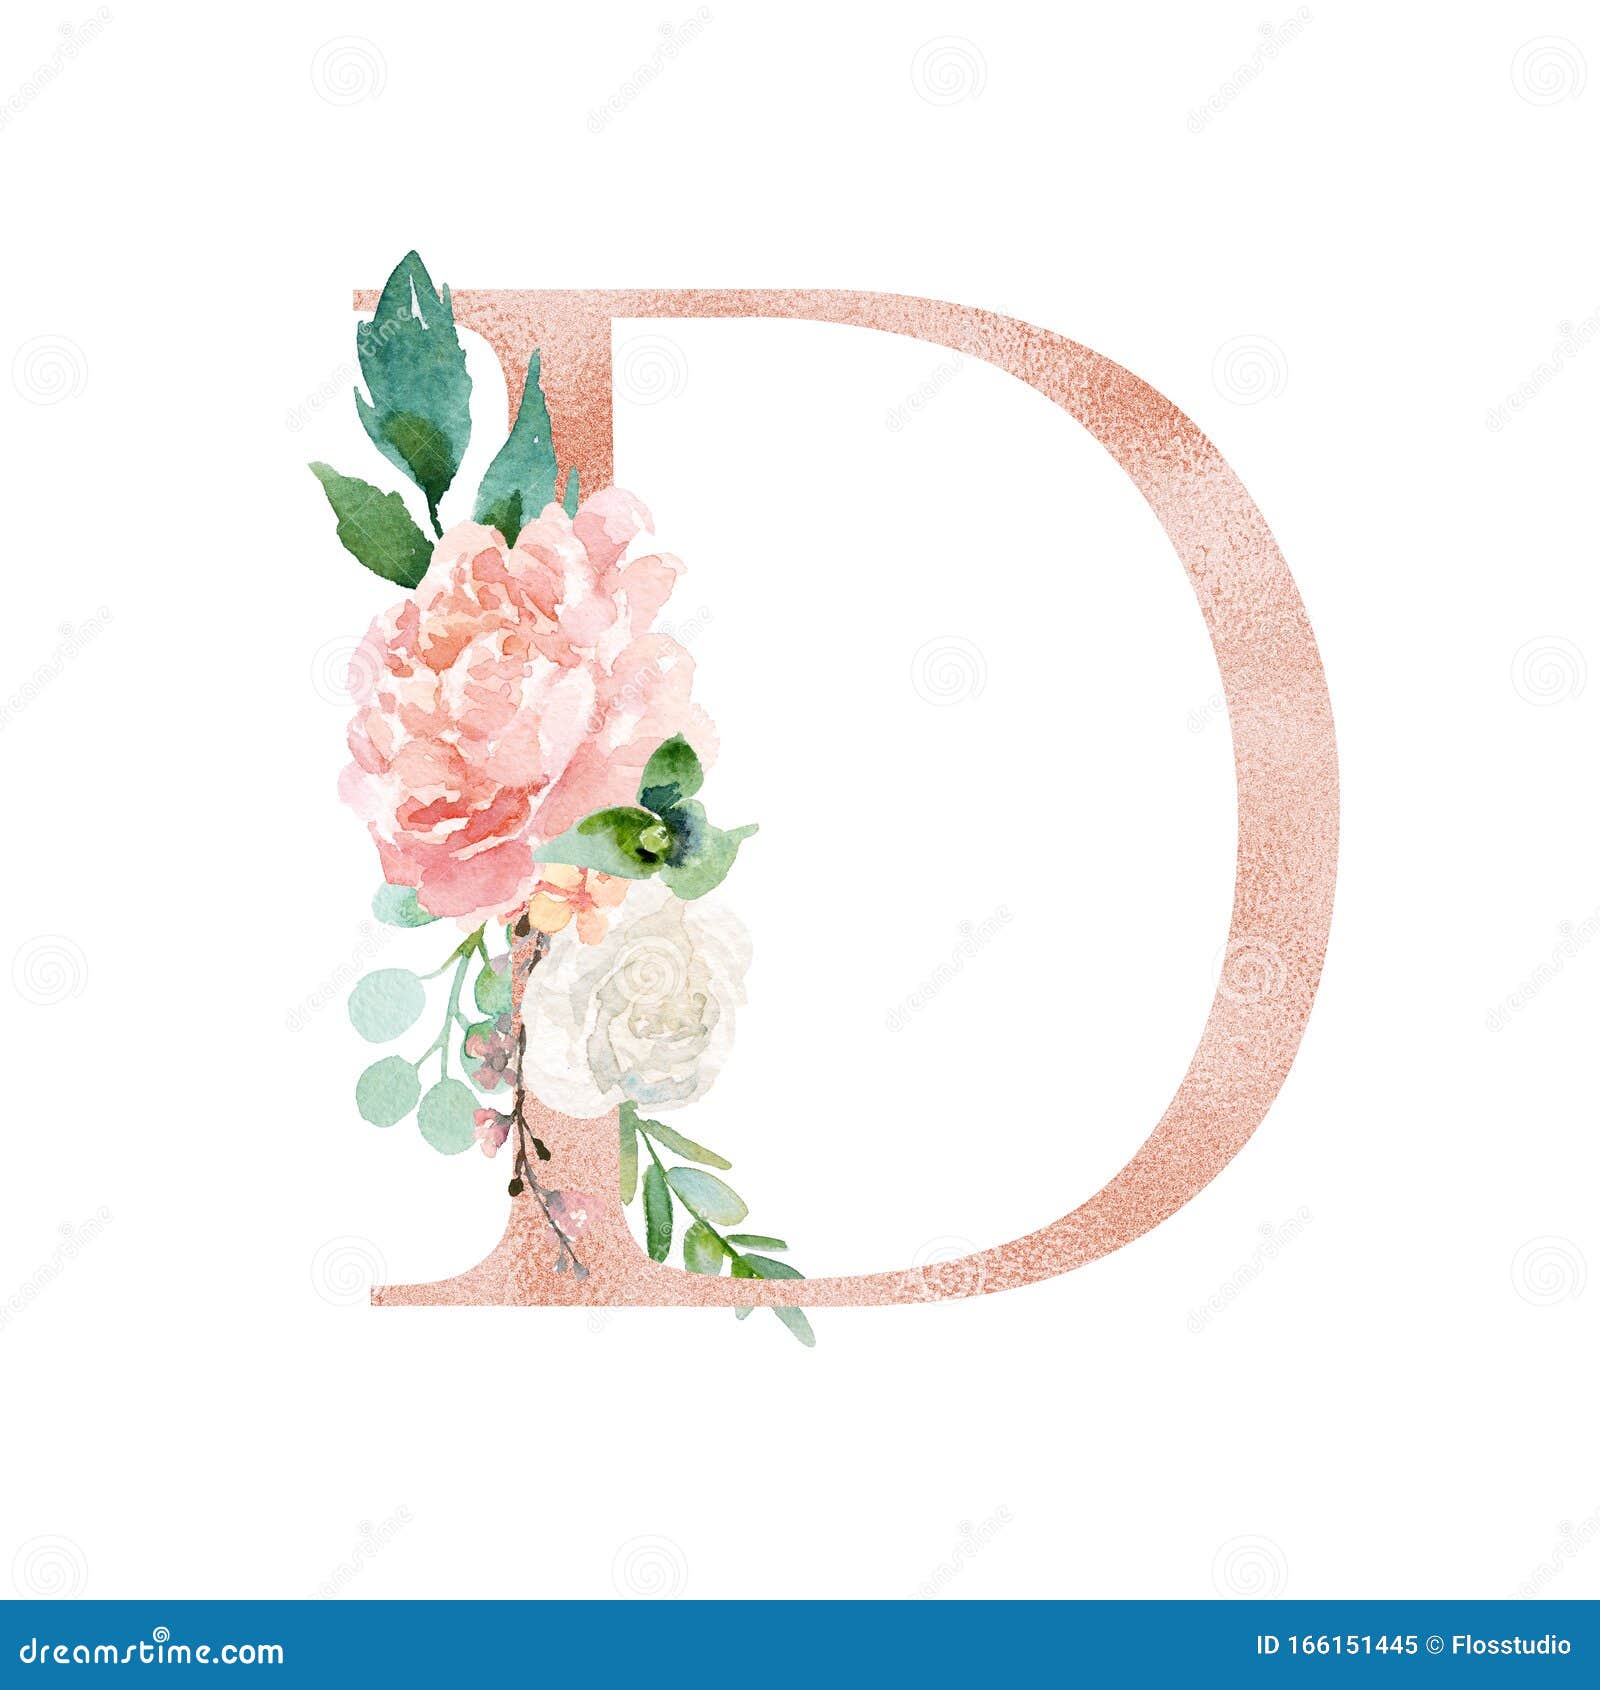 Floral Letter H Design Template. Mother's Das Flower Logo Type Design